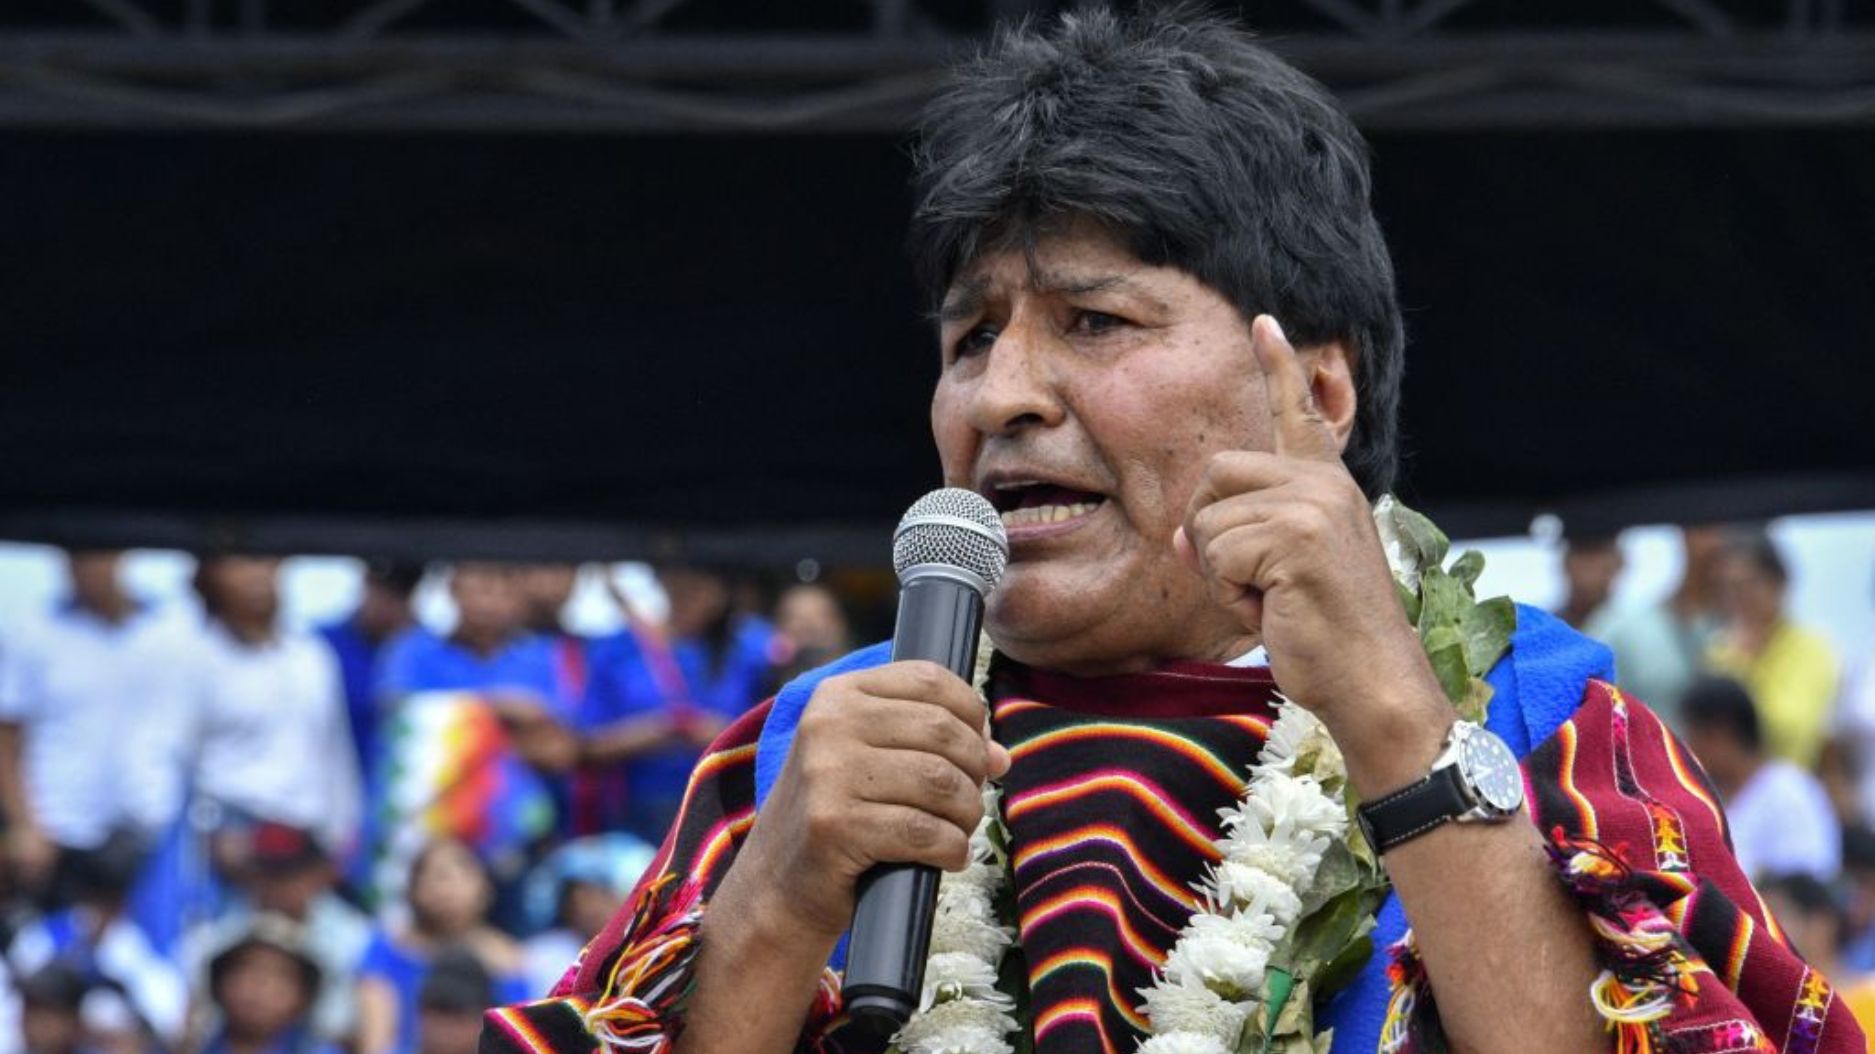 La Justicia de Perú ratifica la prohibición para el ingreso de Evo Morales  al país